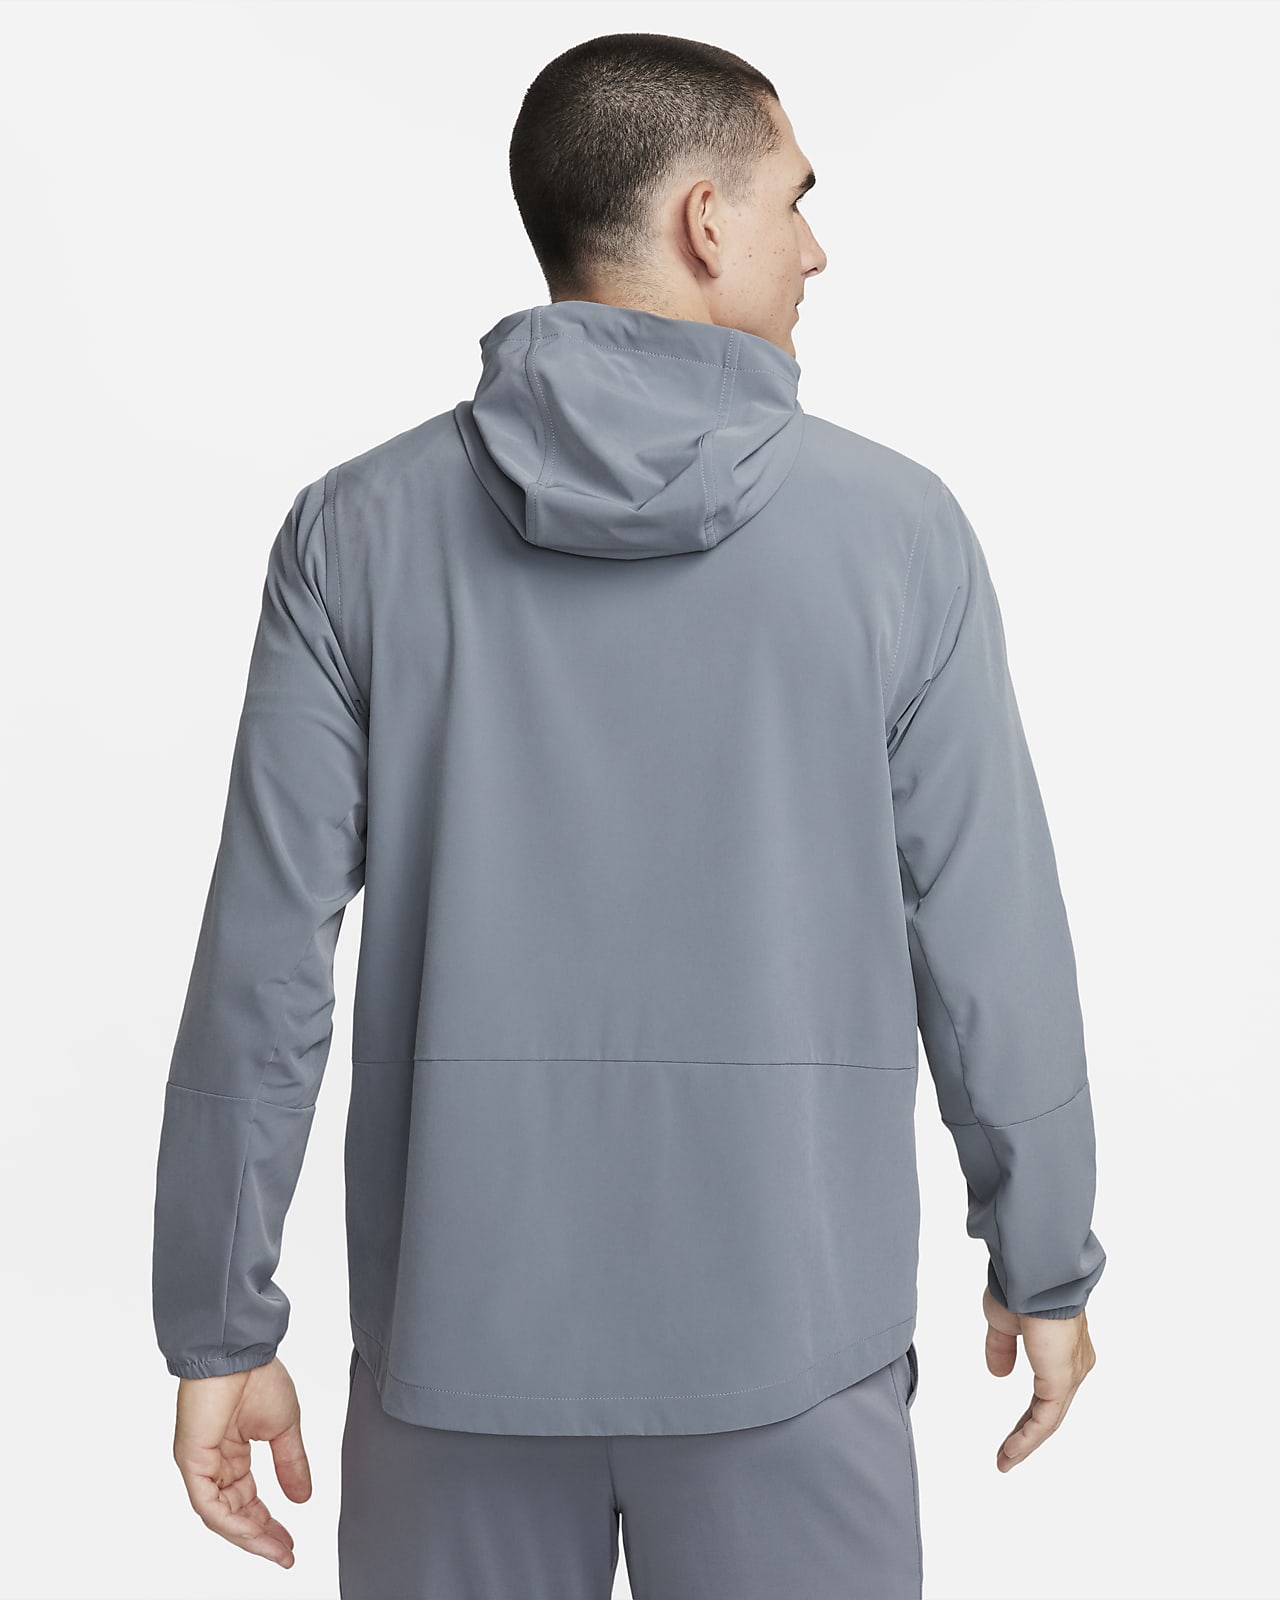 Veste à capuche déperlante Nike Unlimited pour homme